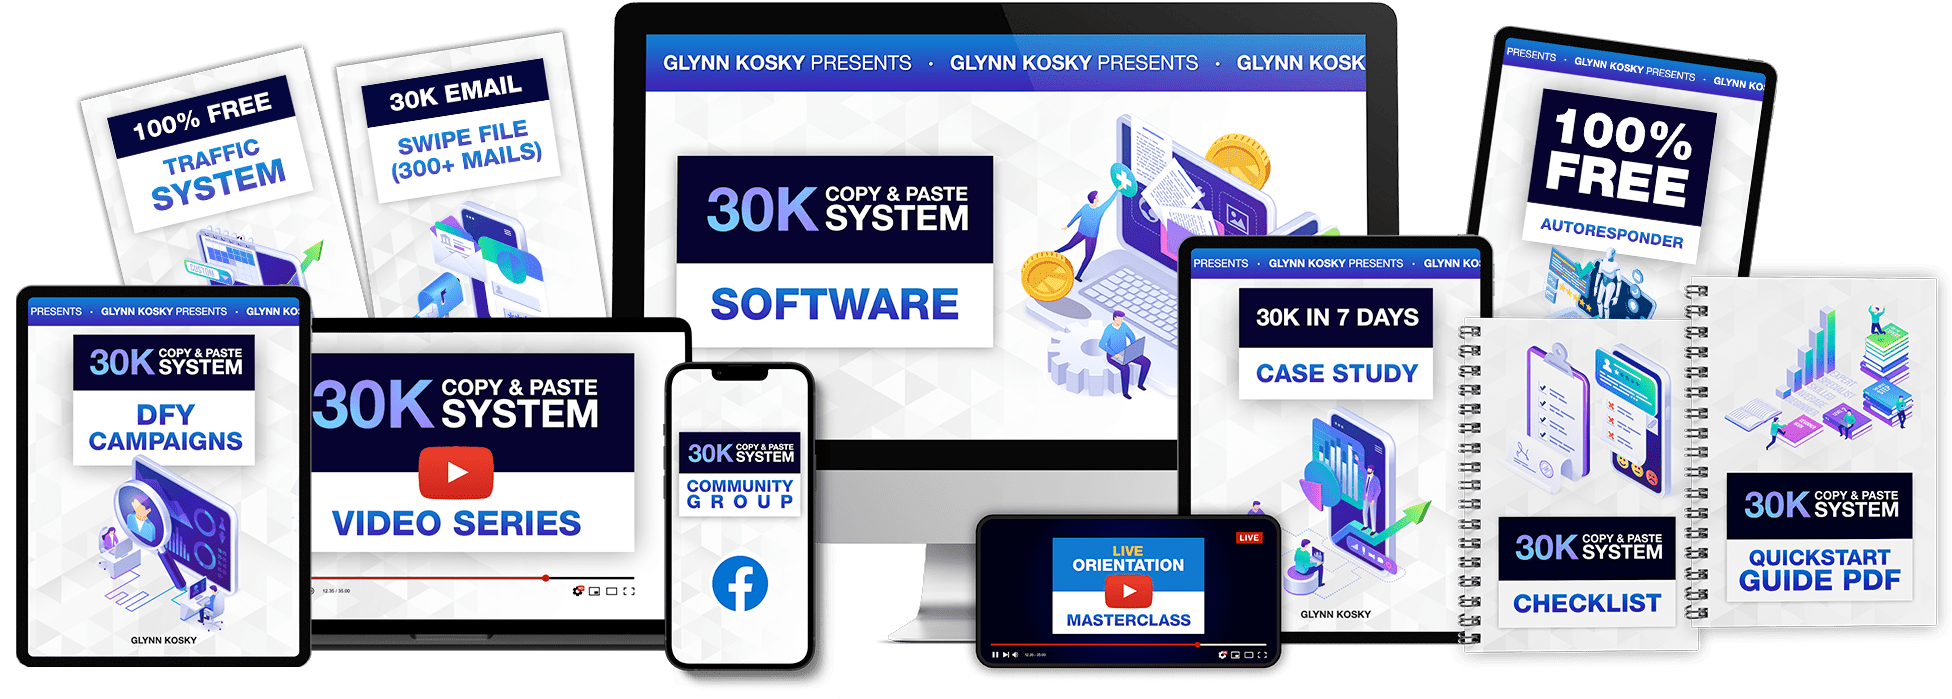 Glynn Kosky - 30K Copy & Paste System Free Download